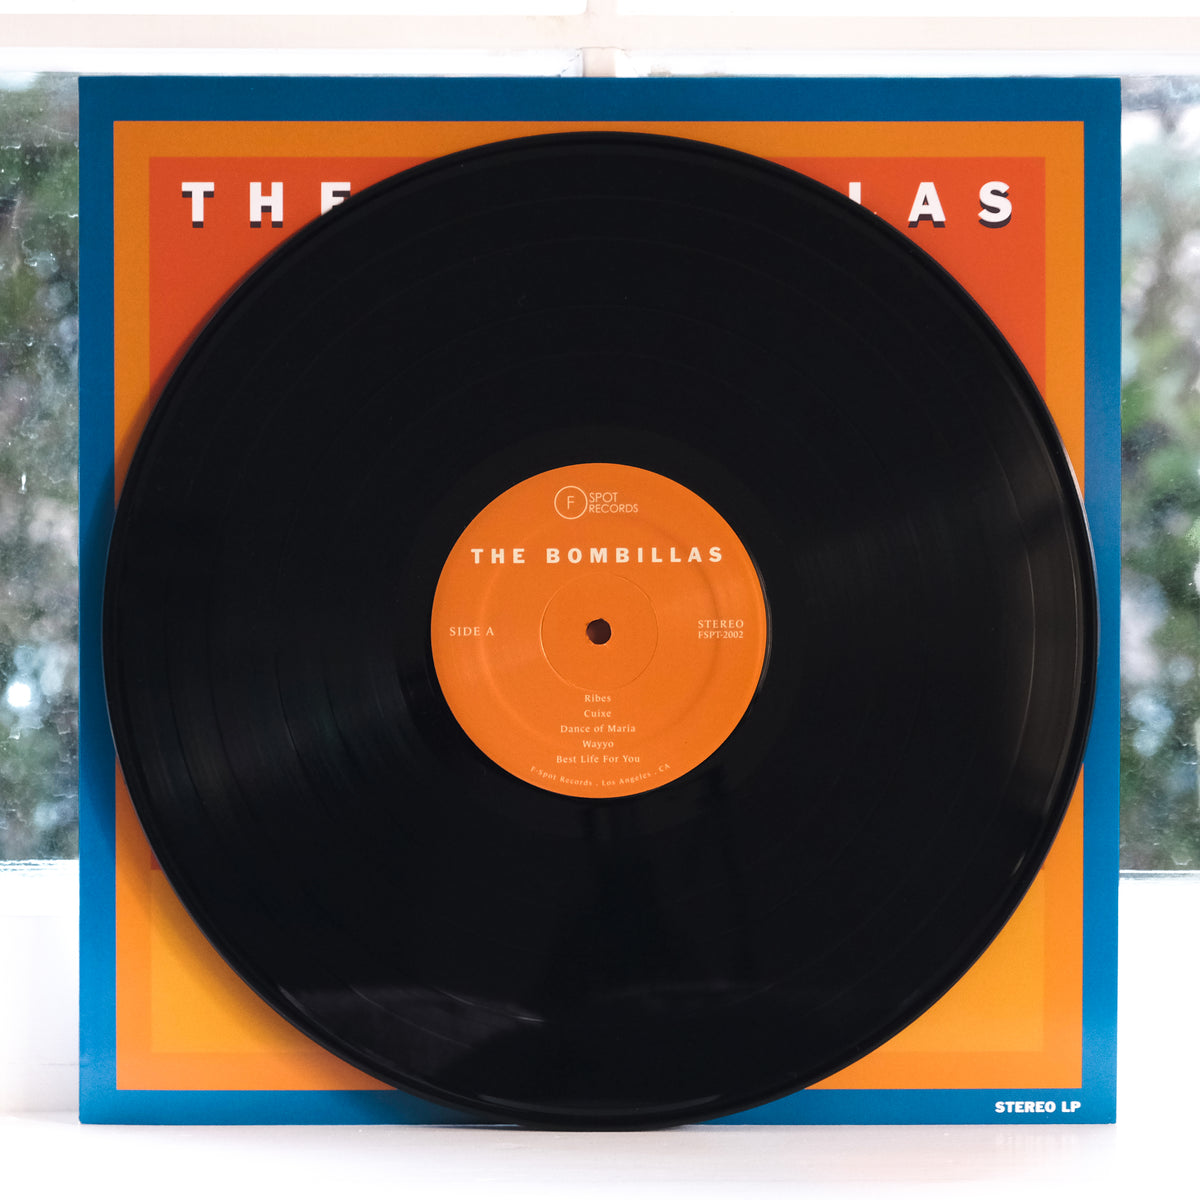 THE BOMBILLAS - The Bombillas LP – F-Spot Records